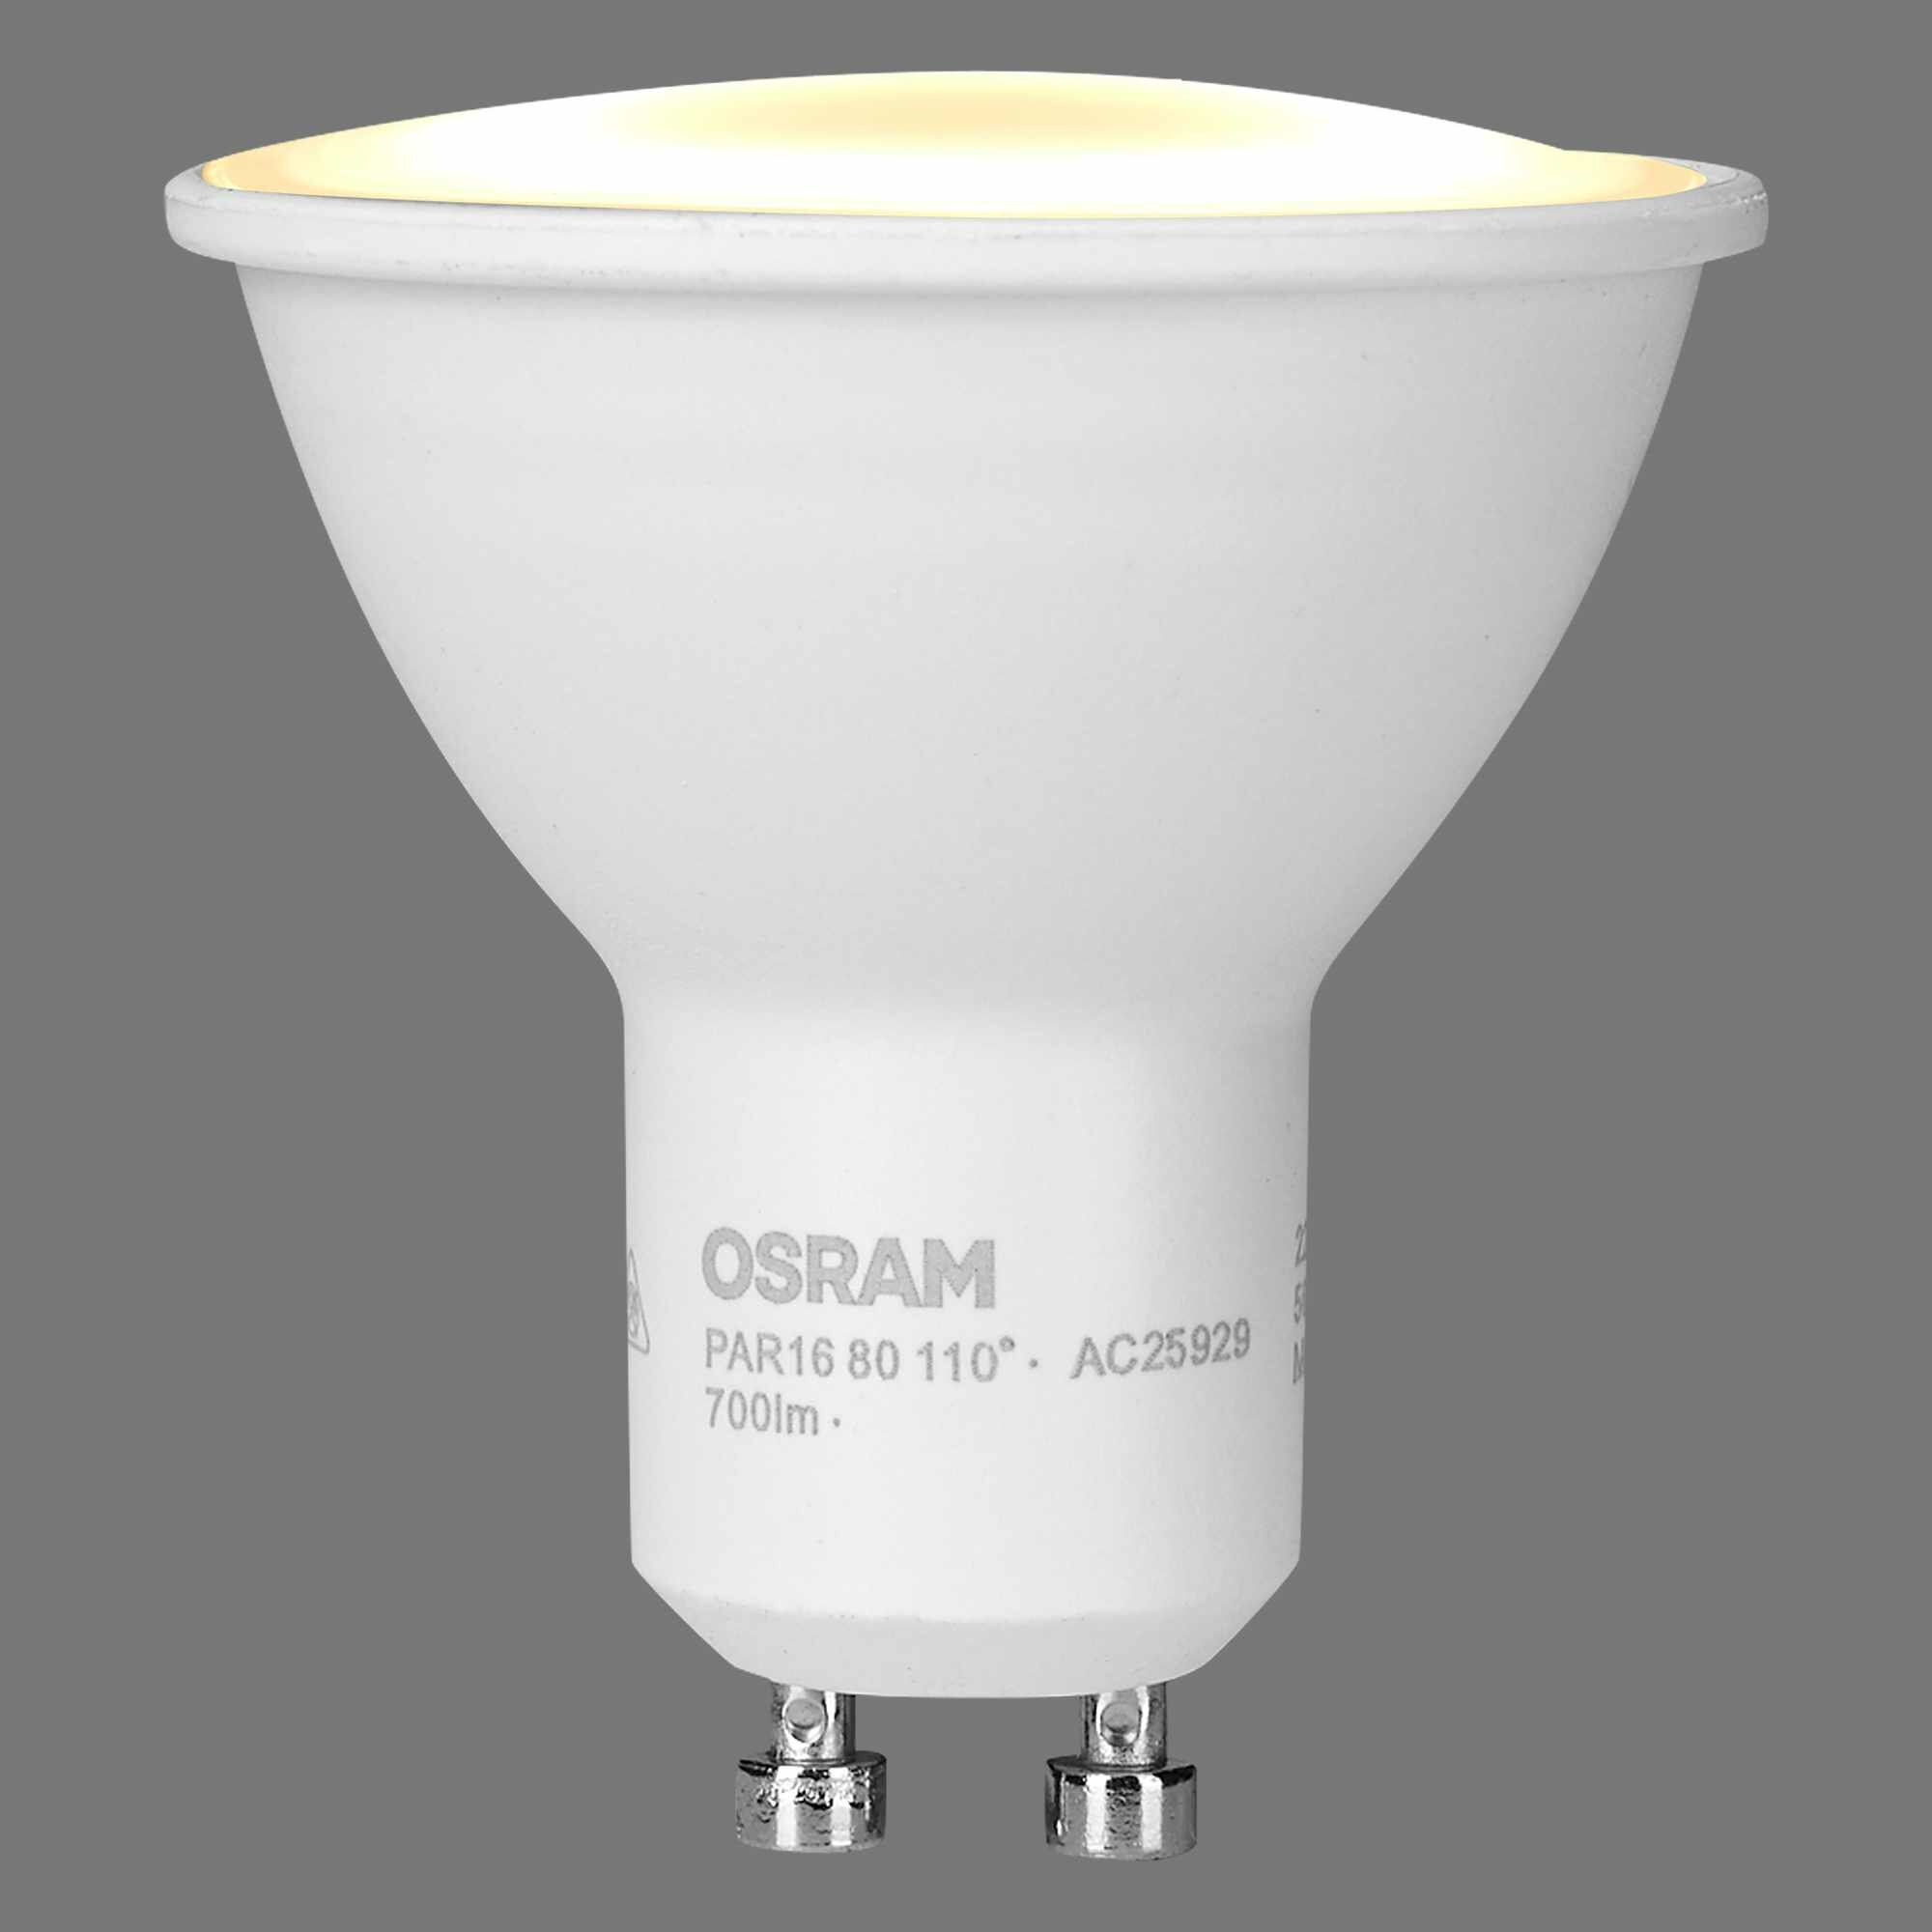 Лампа светодиодная Osram GU10 220-240 В 7 Вт спот матовая 700 лм холодный белый свет